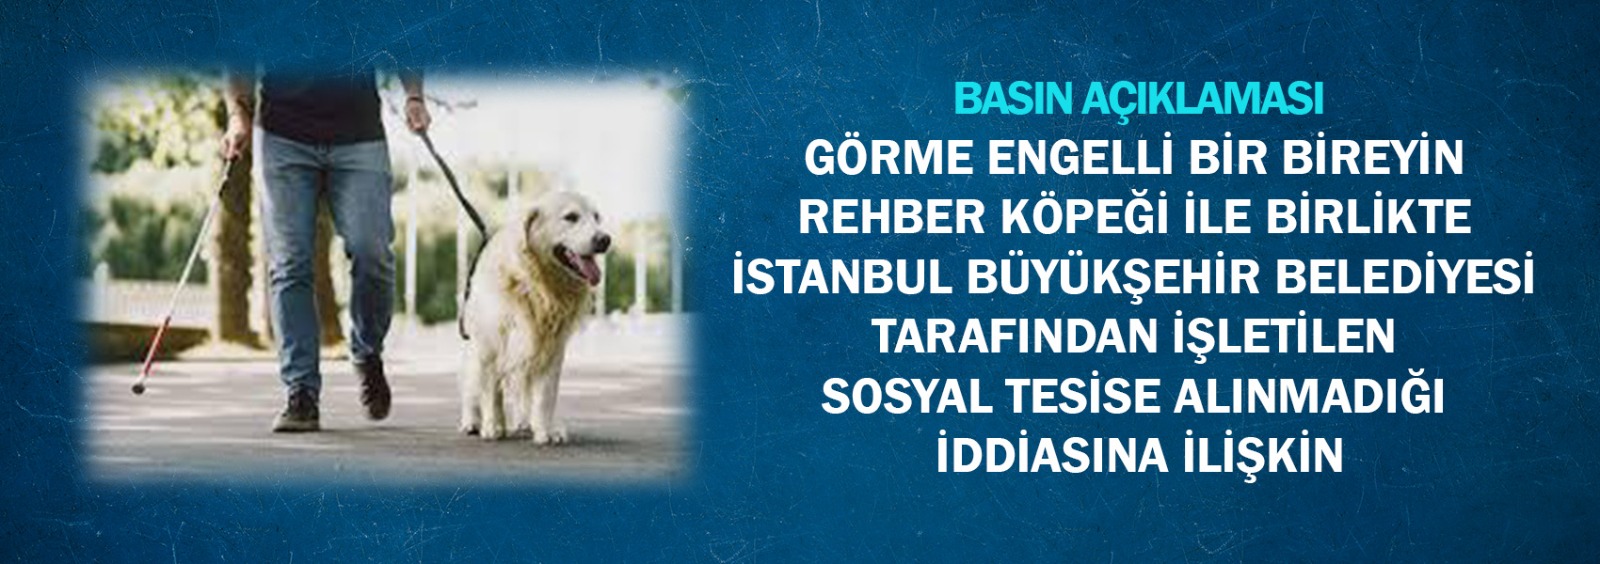 Görme Engelli Bir Bireyin Rehber Köpeği İle Birlikte İstanbul Büyükşehir Belediyesi Tarafından İşletilen Sosyal Tesise Alınmadığı İddiasına İlişkin Basın Açıklaması